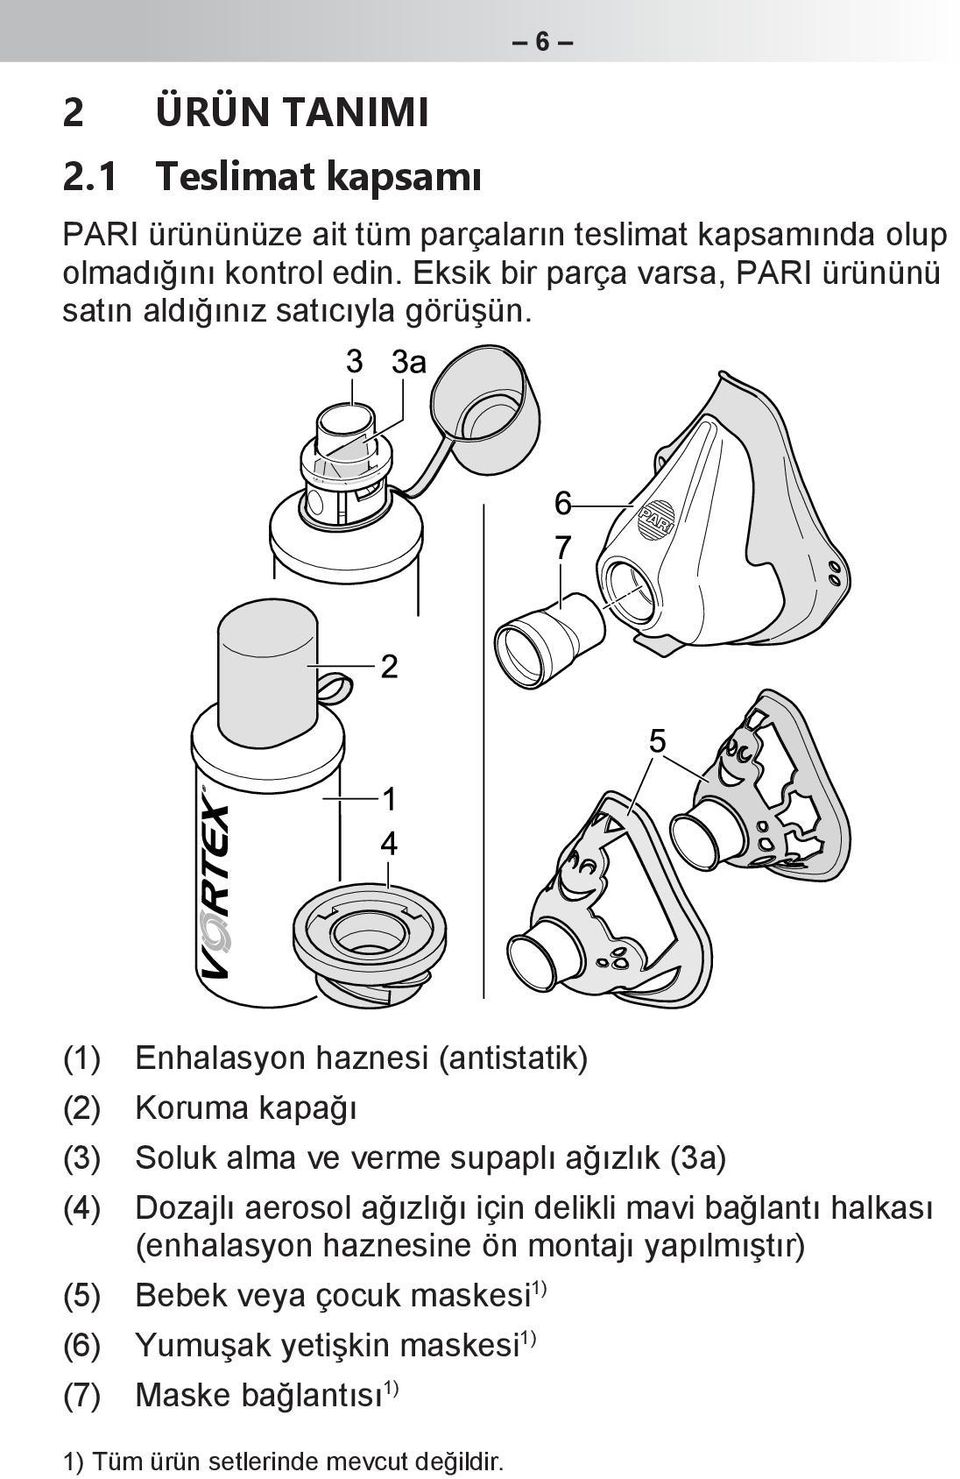 (1) Enhalasyon haznesi (antistatik) (2) Koruma kapağı (3) Soluk alma ve verme supaplı ağızlık (3a) (4) Dozajlı aerosol ağızlığı